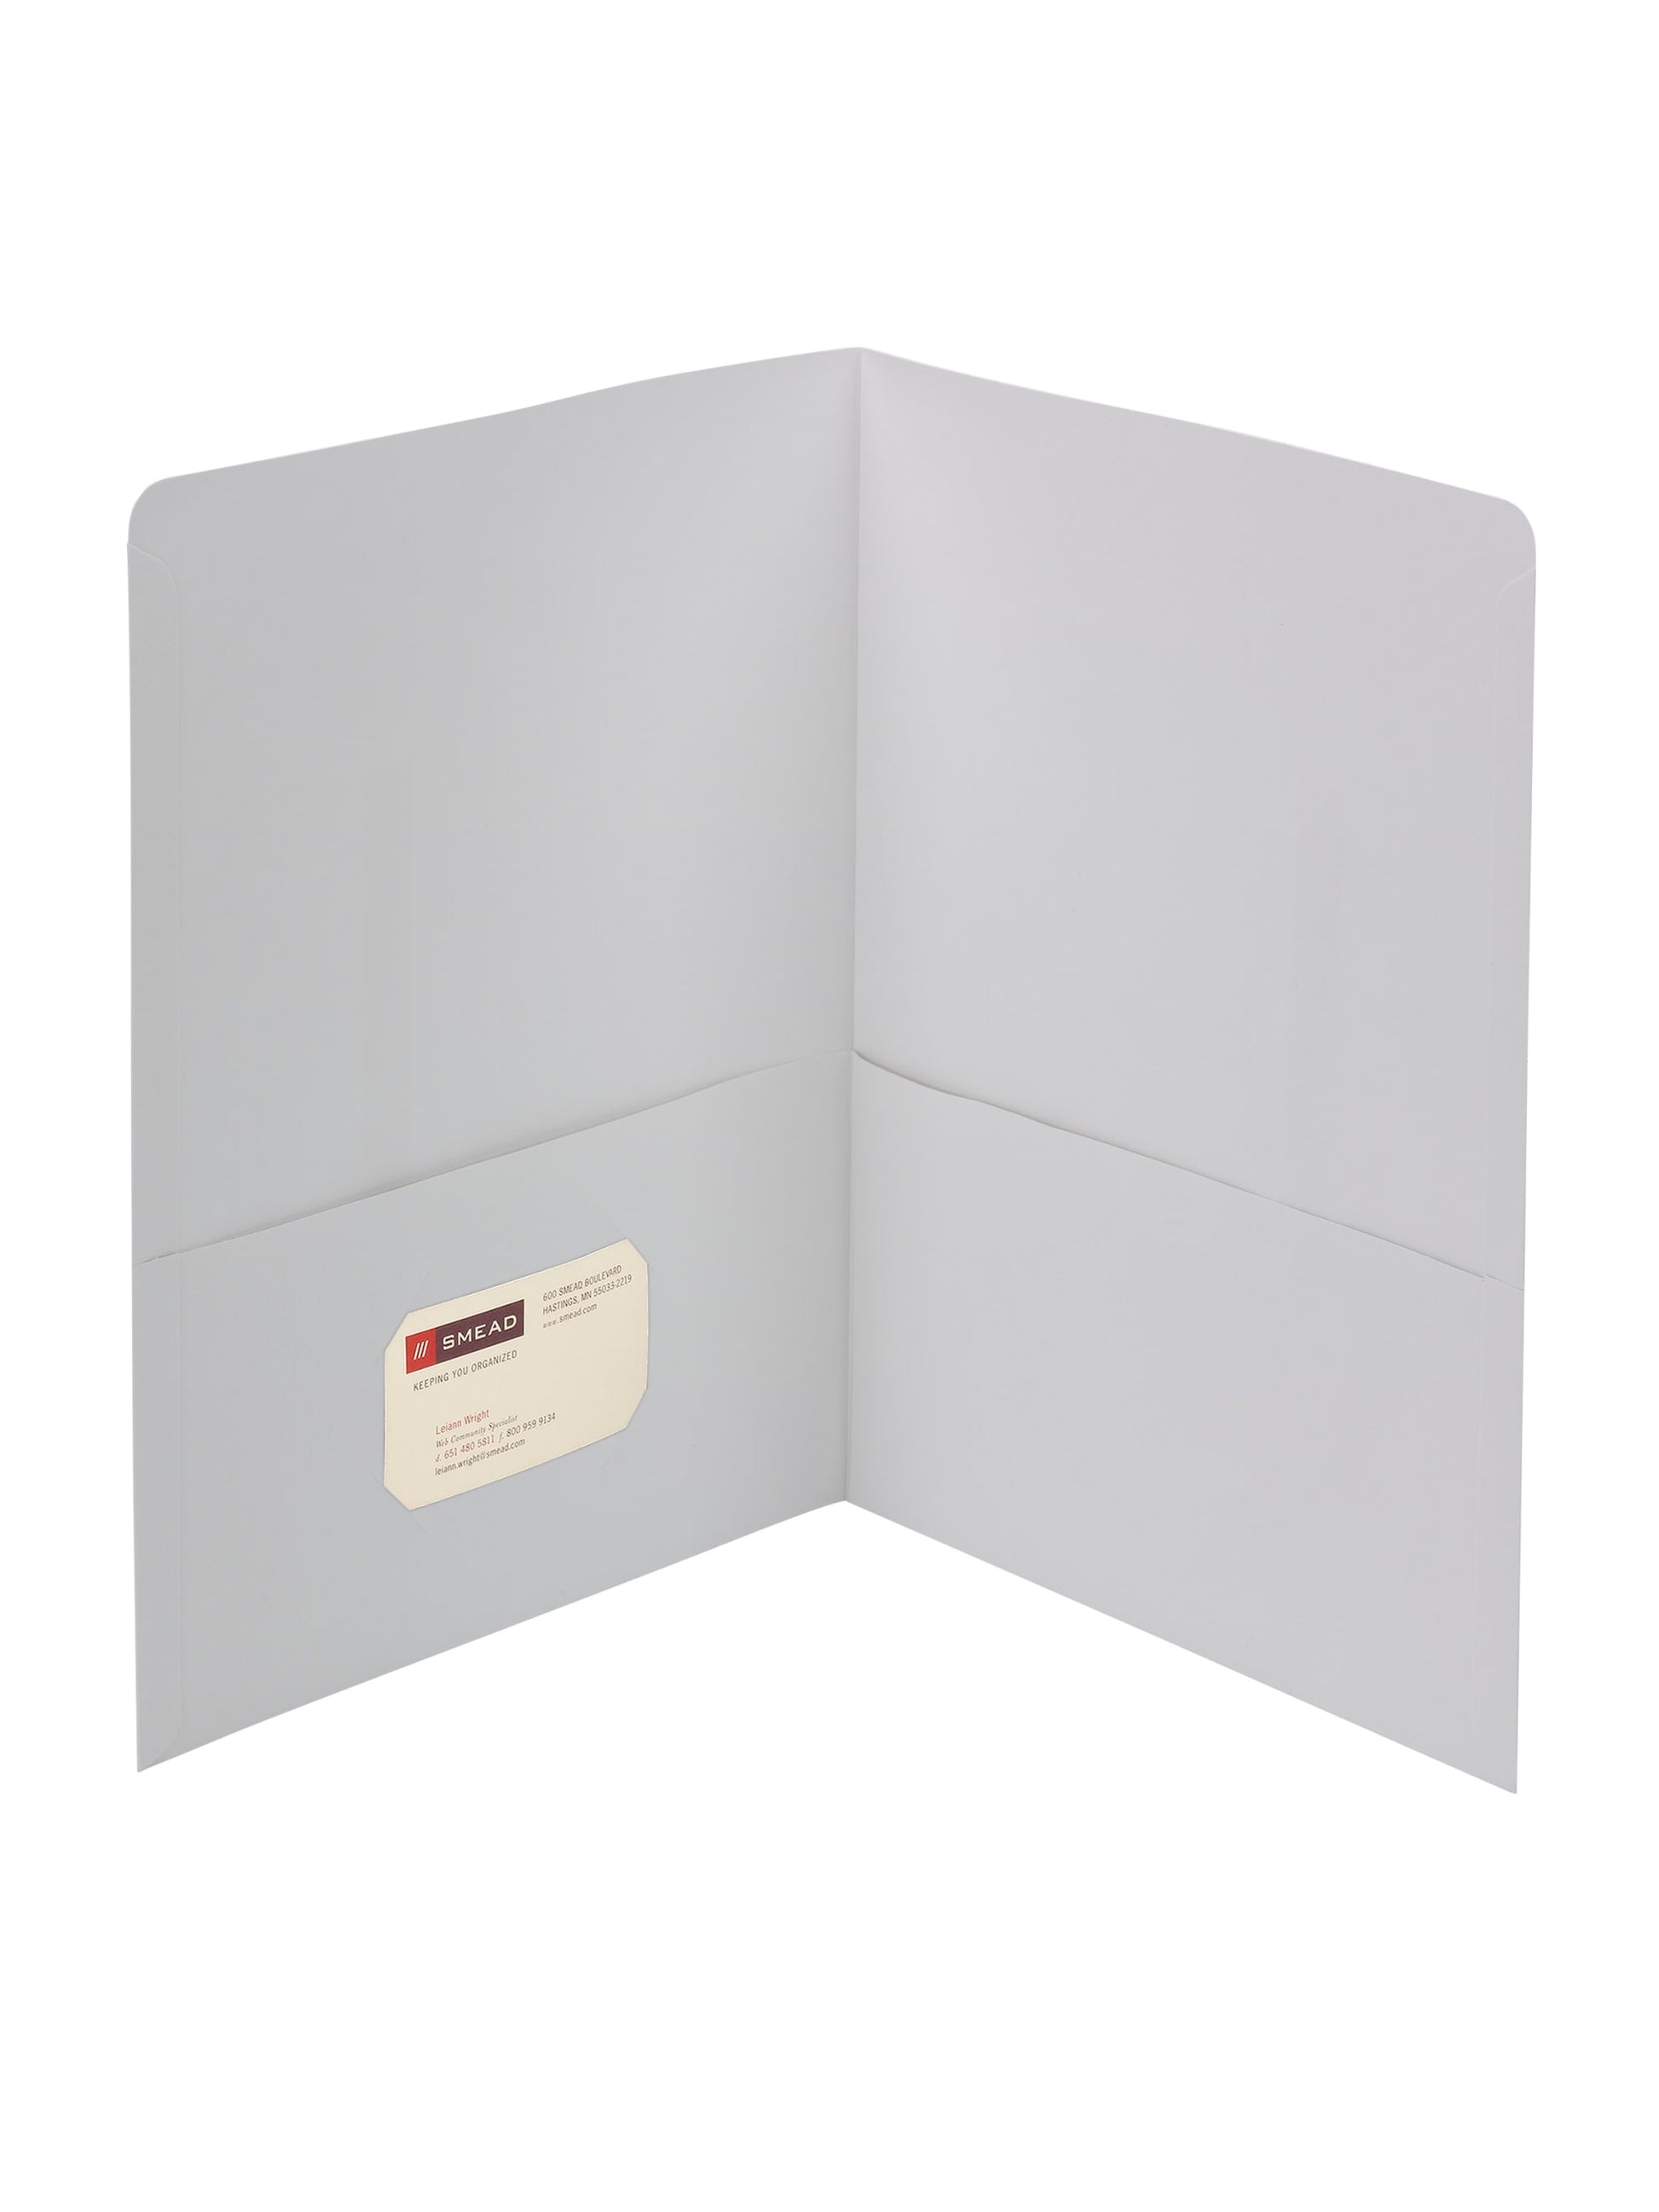 Standard Two-Pocket Folders, White Color, Letter Size, Set of 0, 30086486878617